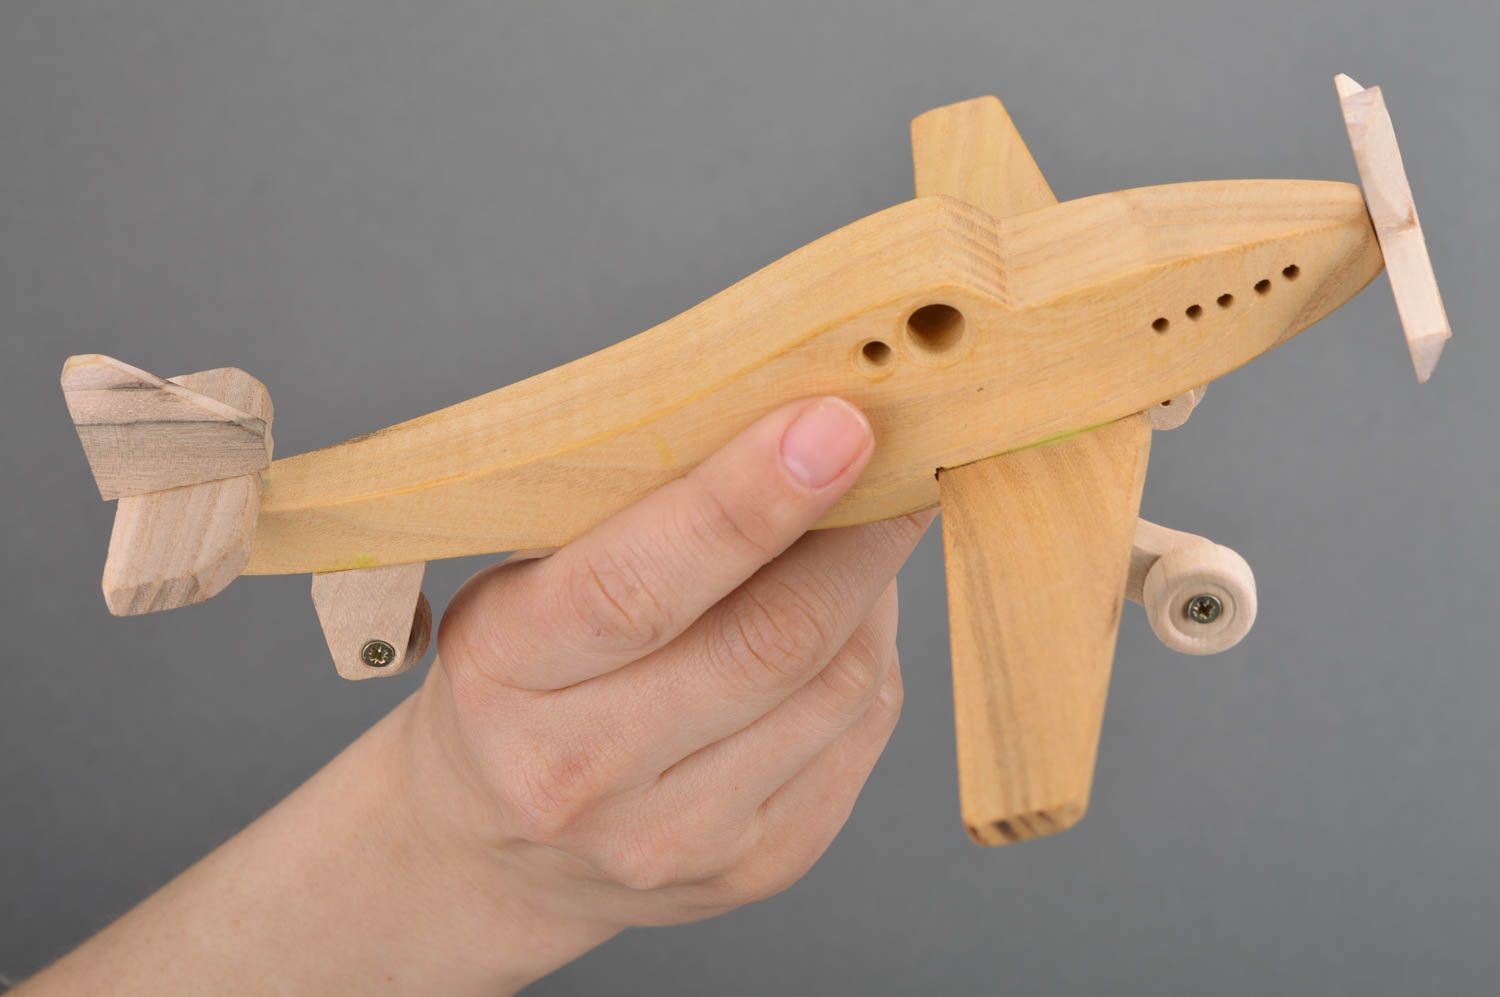 Деревянный самолет мустанг игрушечный хэндмэйд экологически чистый для мальчиков фото 3